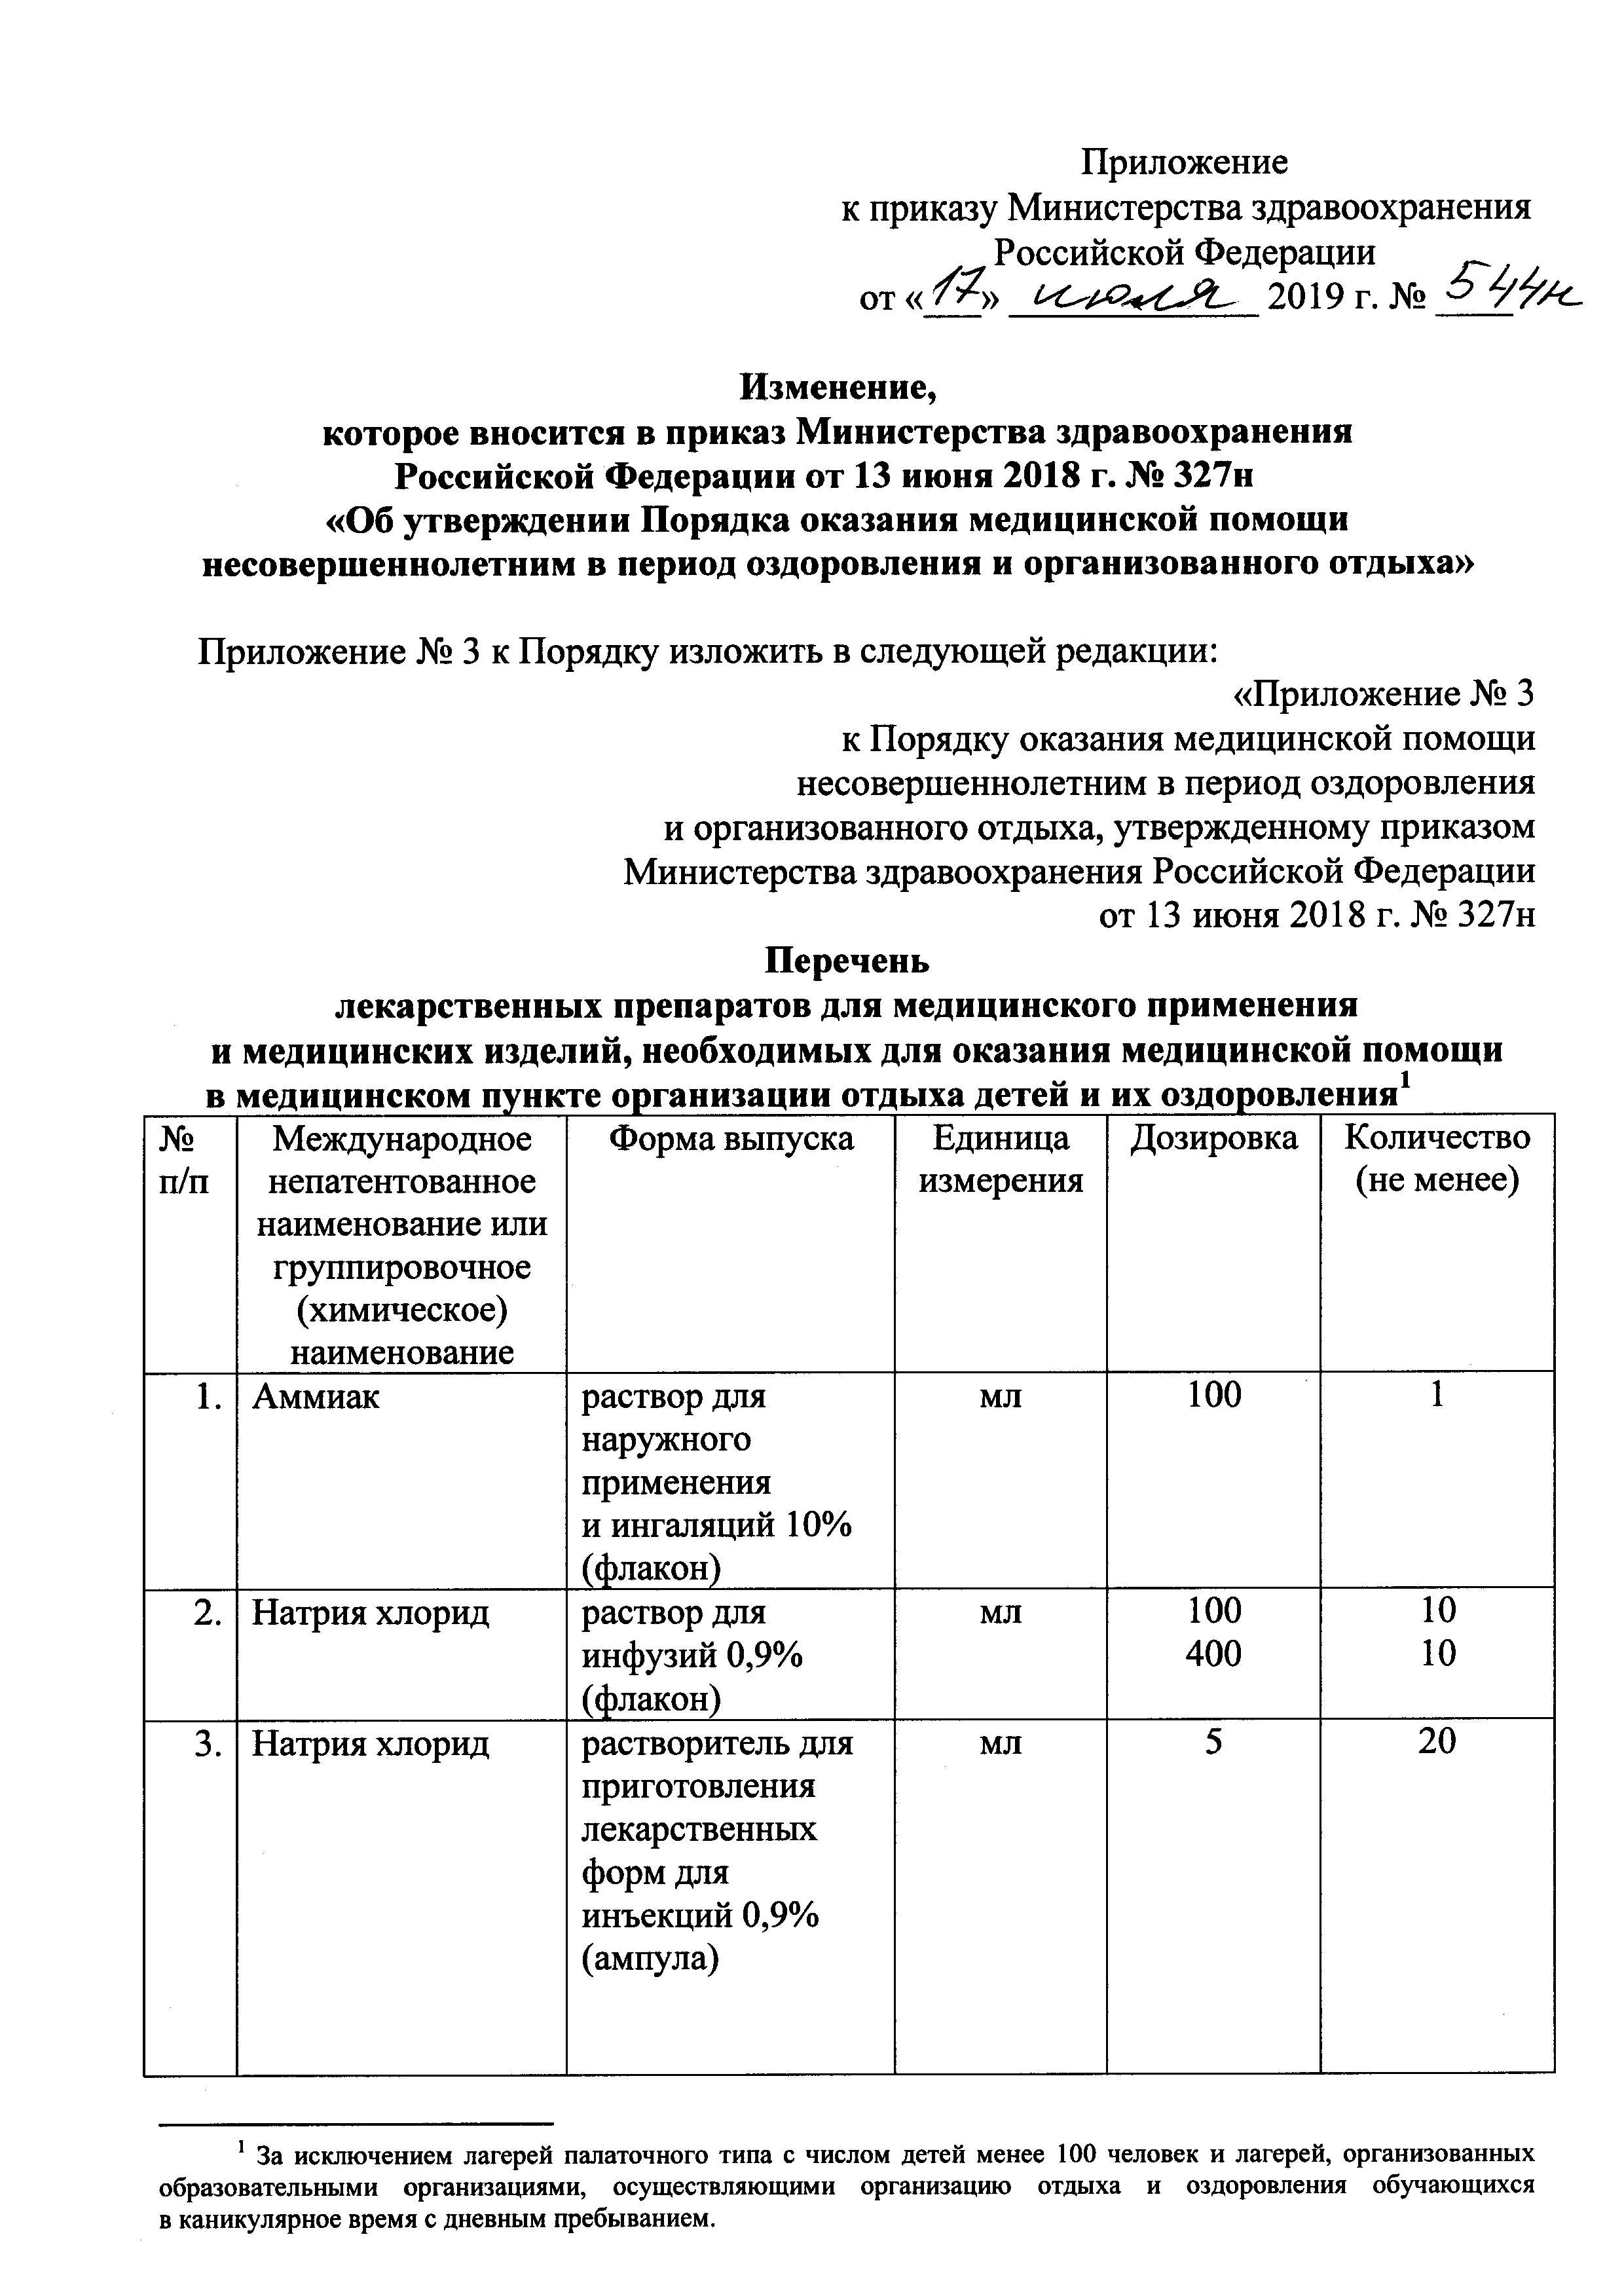 Приказ 288 Министерства здравоохранения РФ